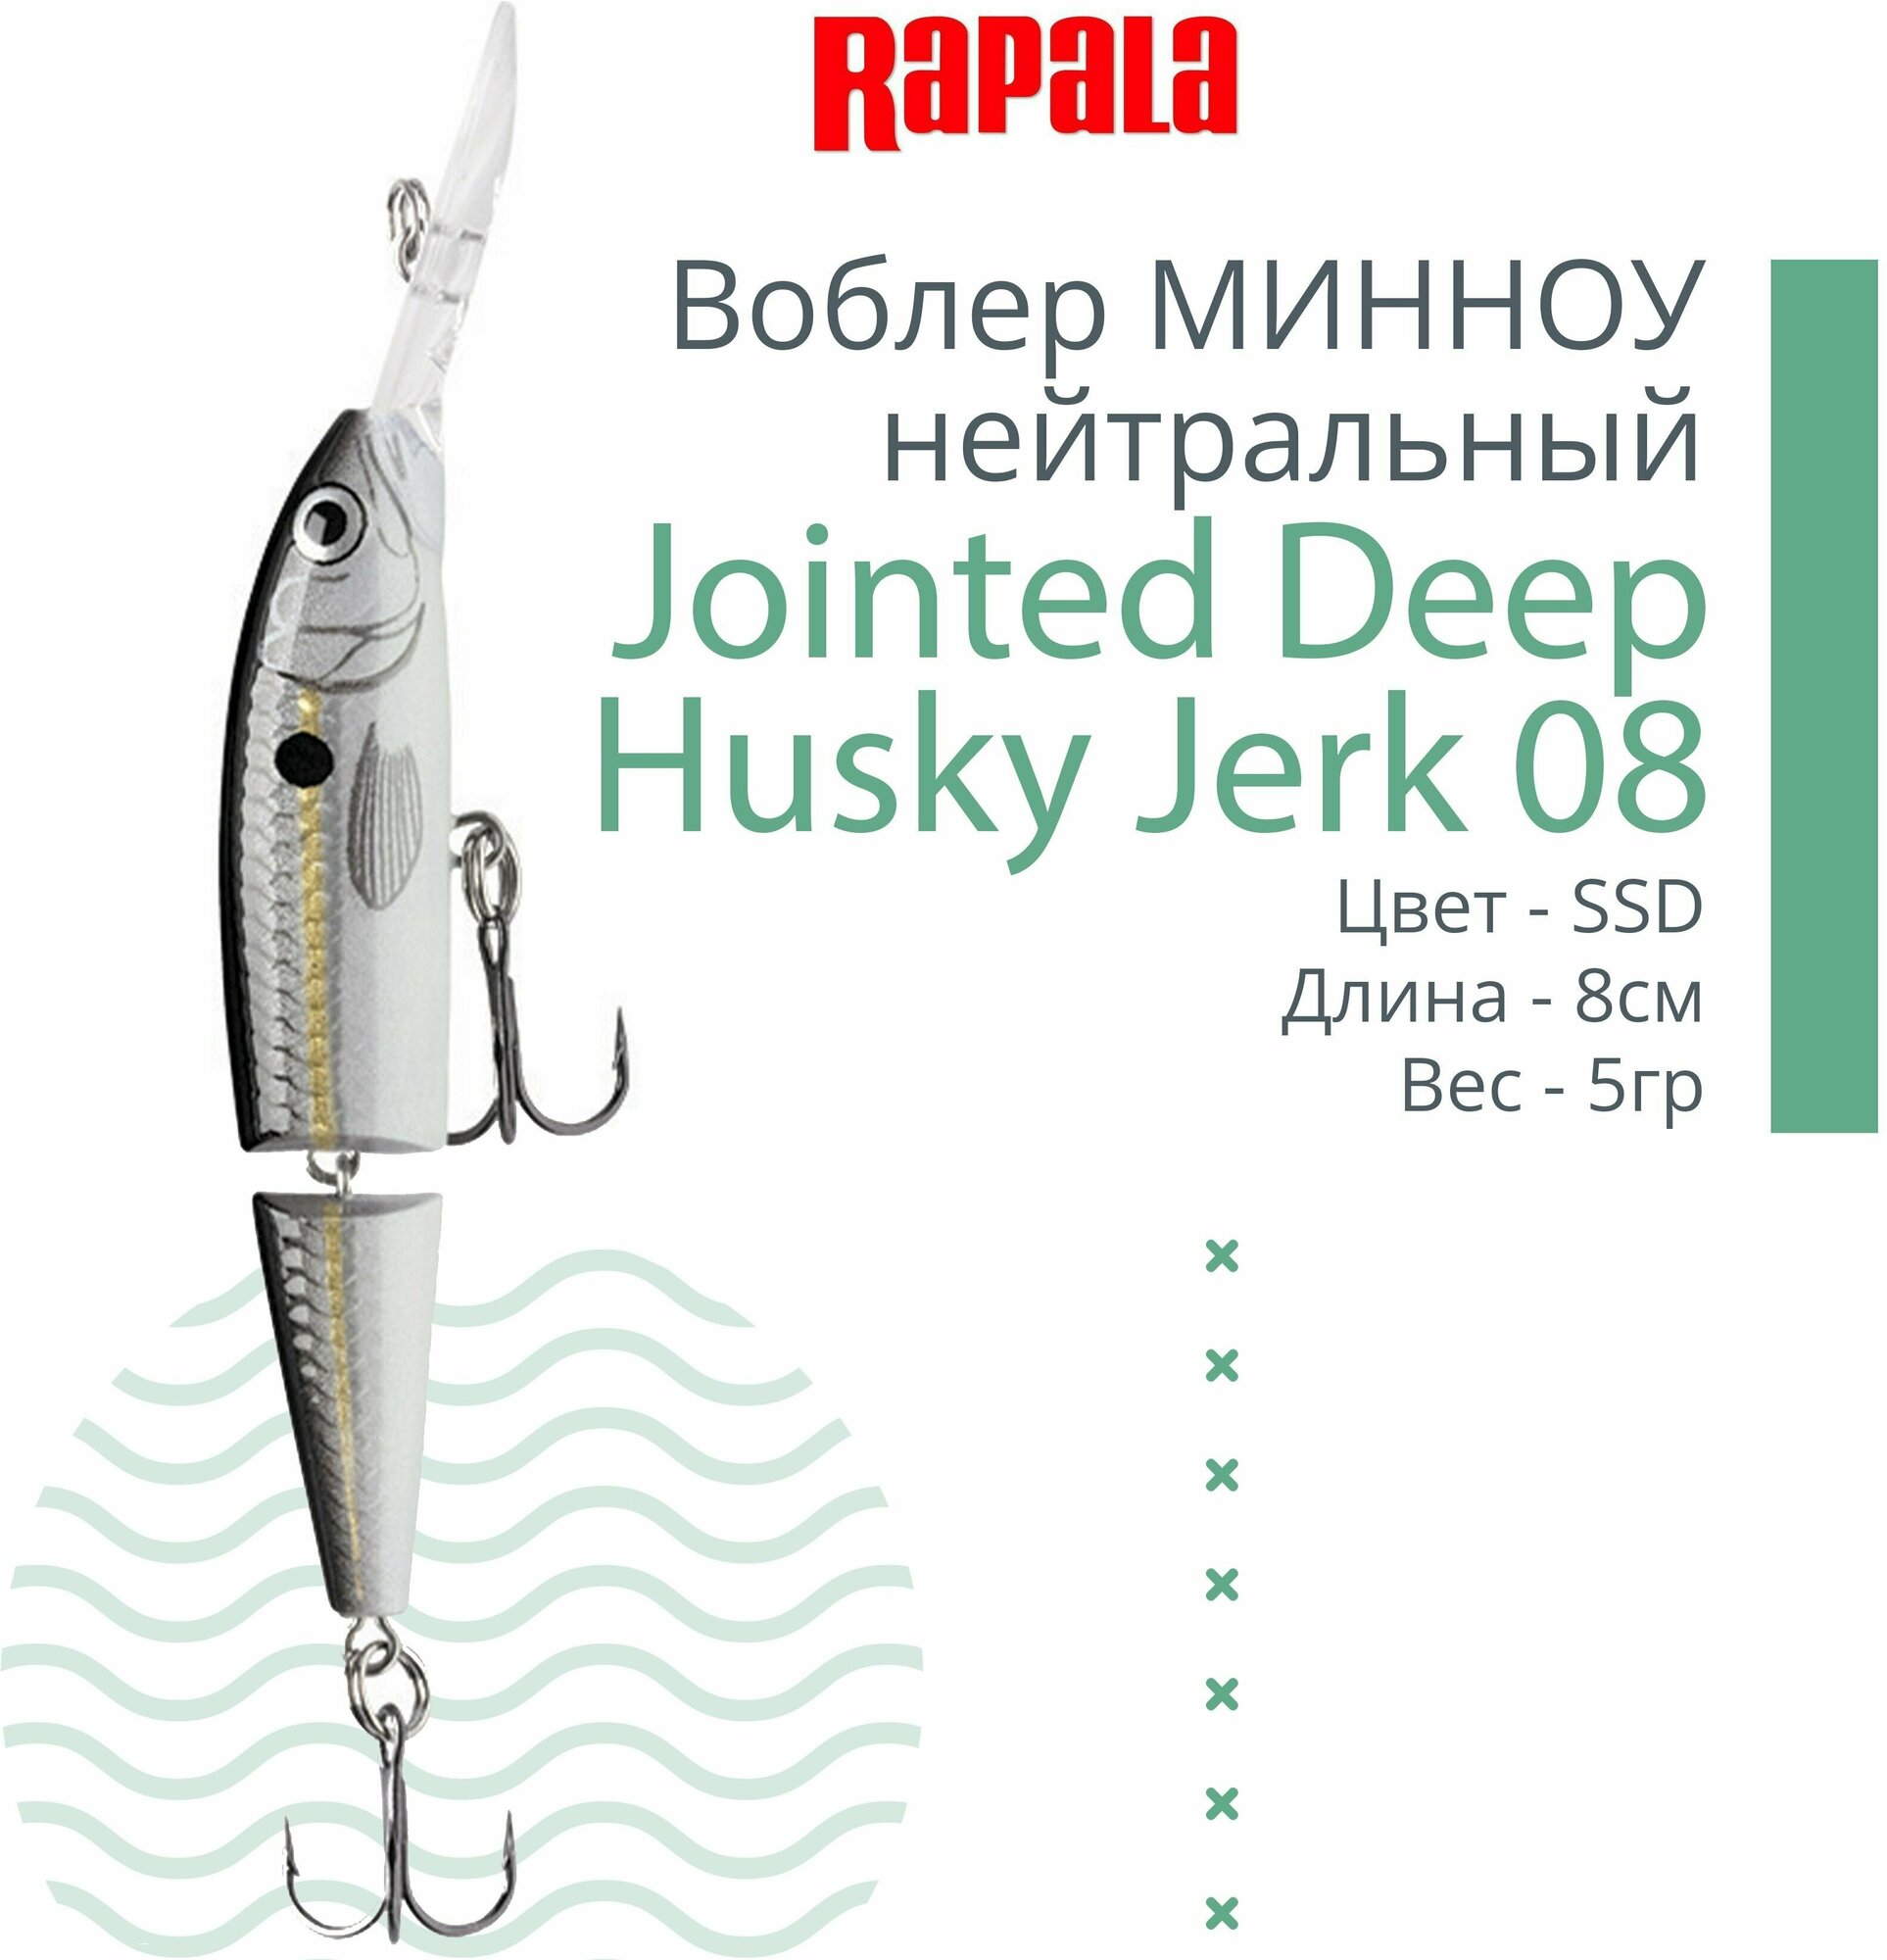 Воблер для рыбалки RAPALA Jointed Deep Husky Jerk 08, 8см, 5гр, цвет SSD, нейтральный